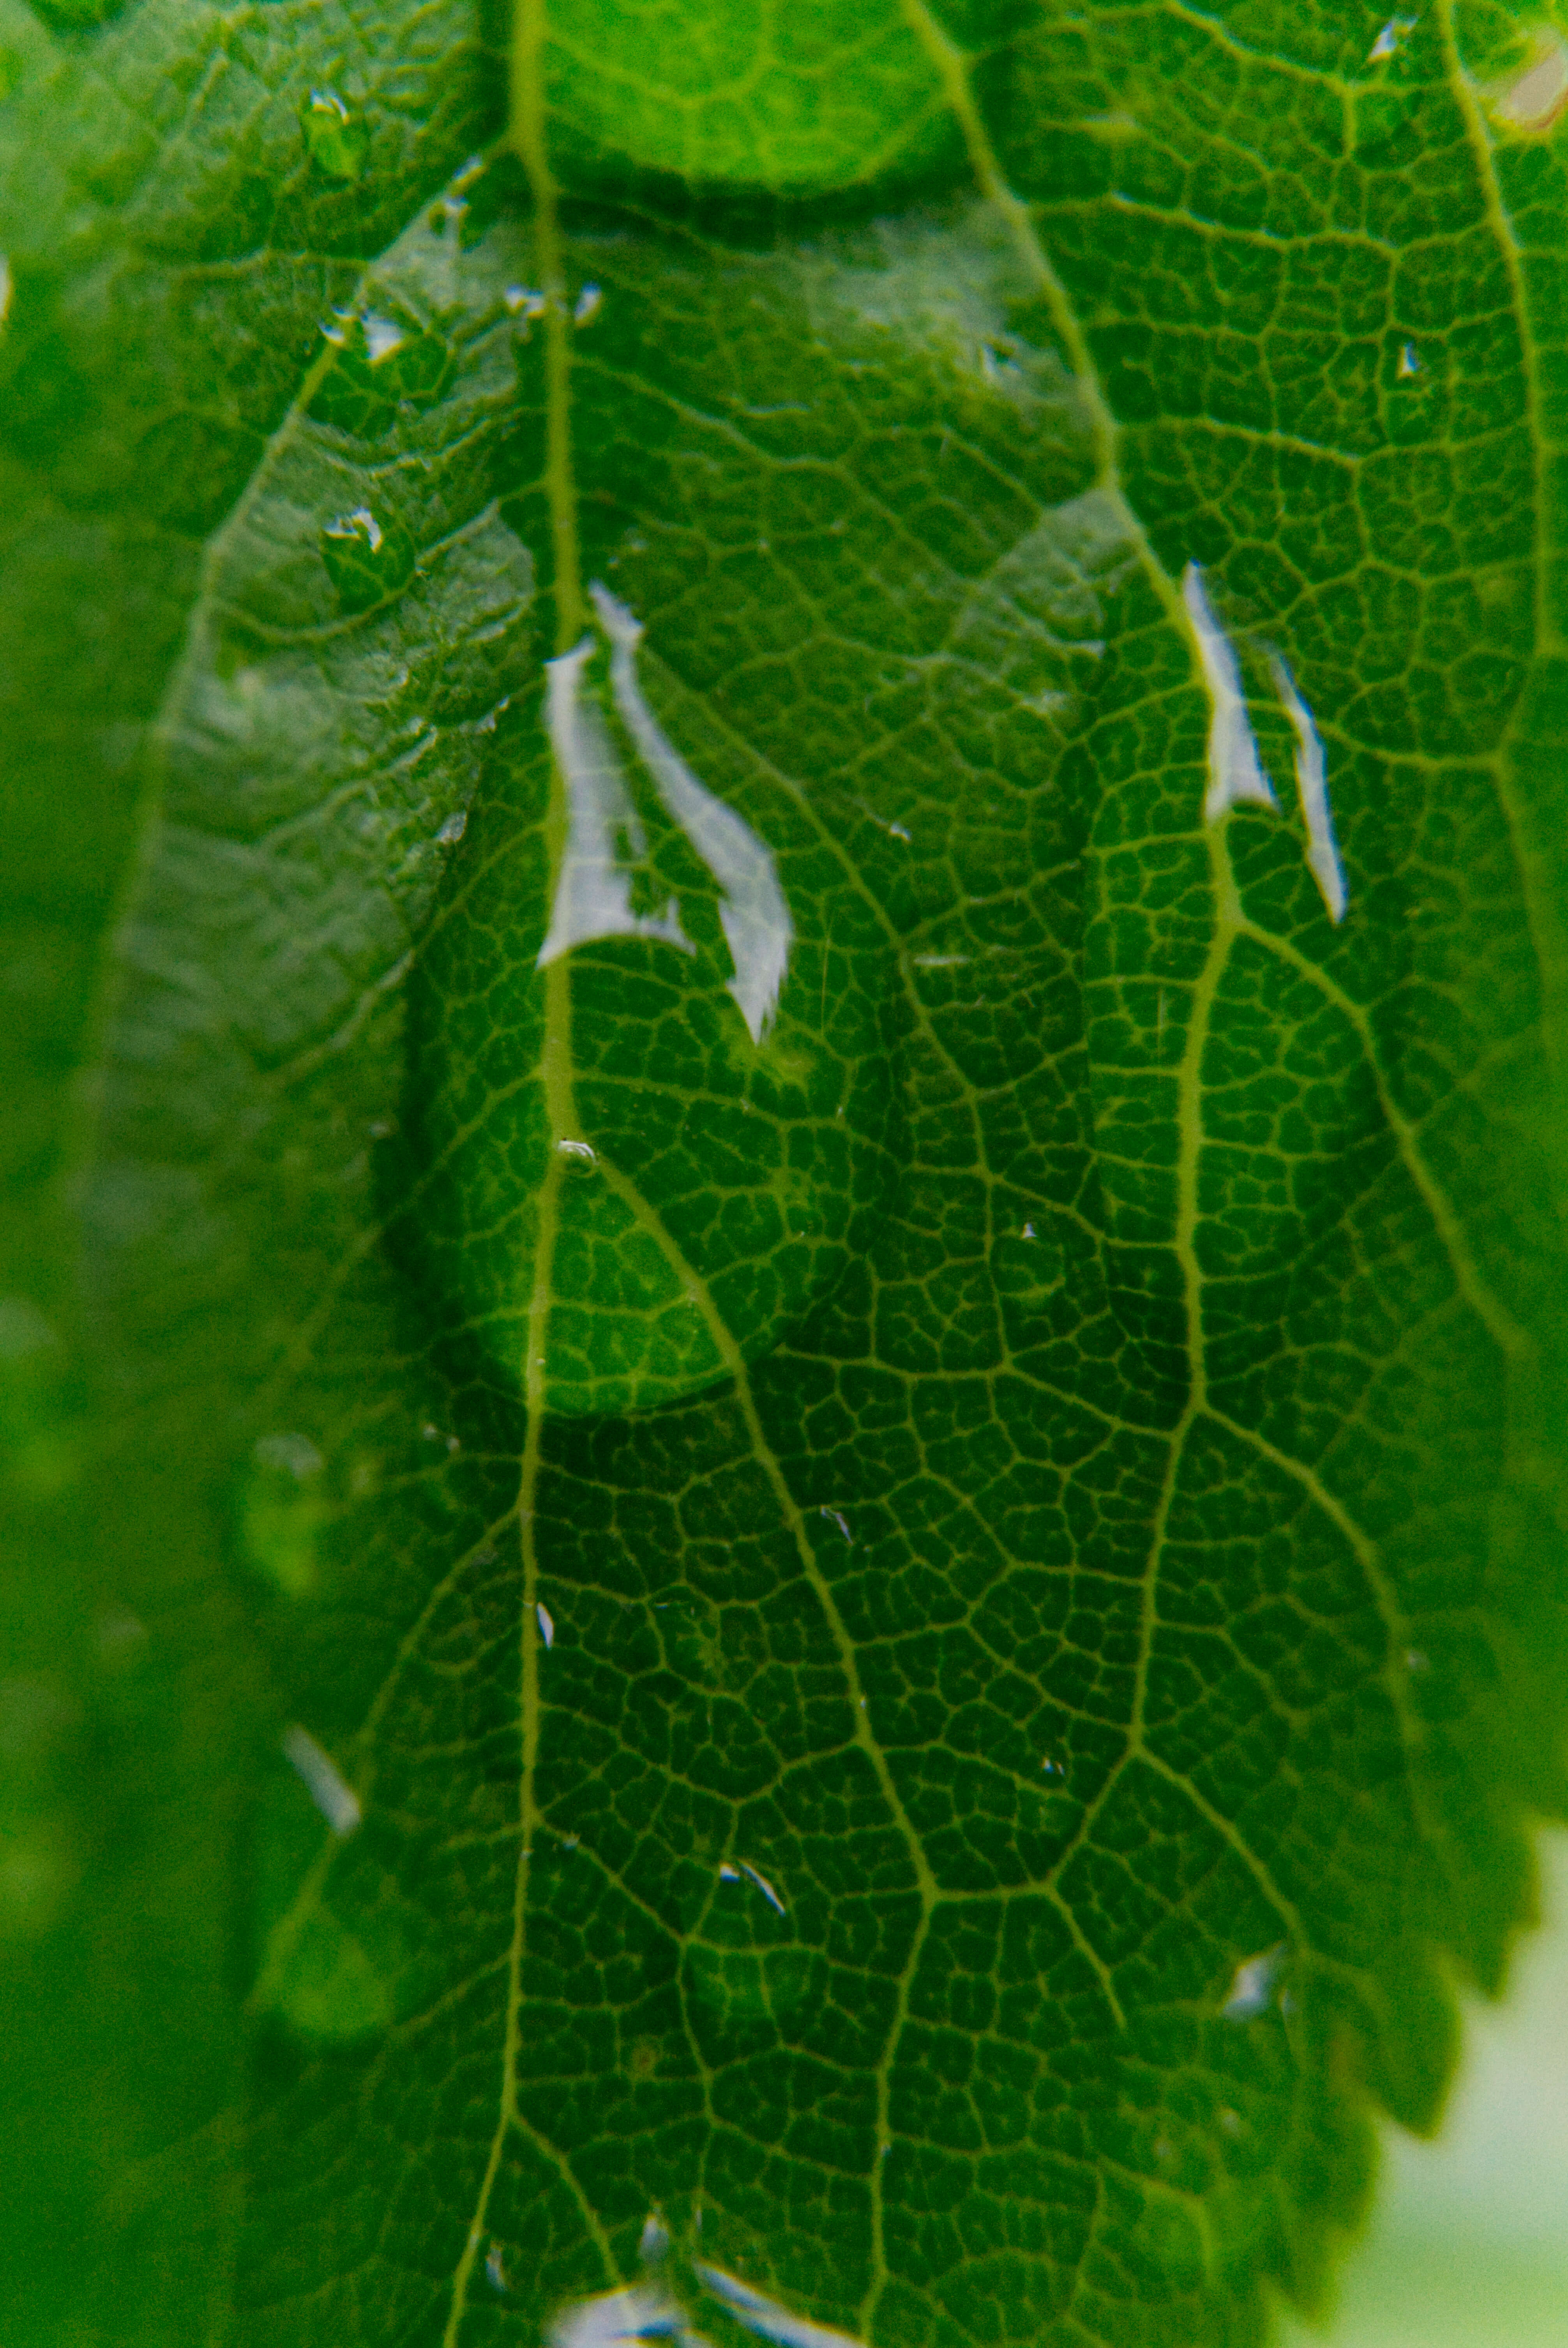 Zwei Tropfen laufen langsam die sich verzweigenden gelblichen Adern eines grünen Blattes hinunter und sehen aus wie Blatttränen.